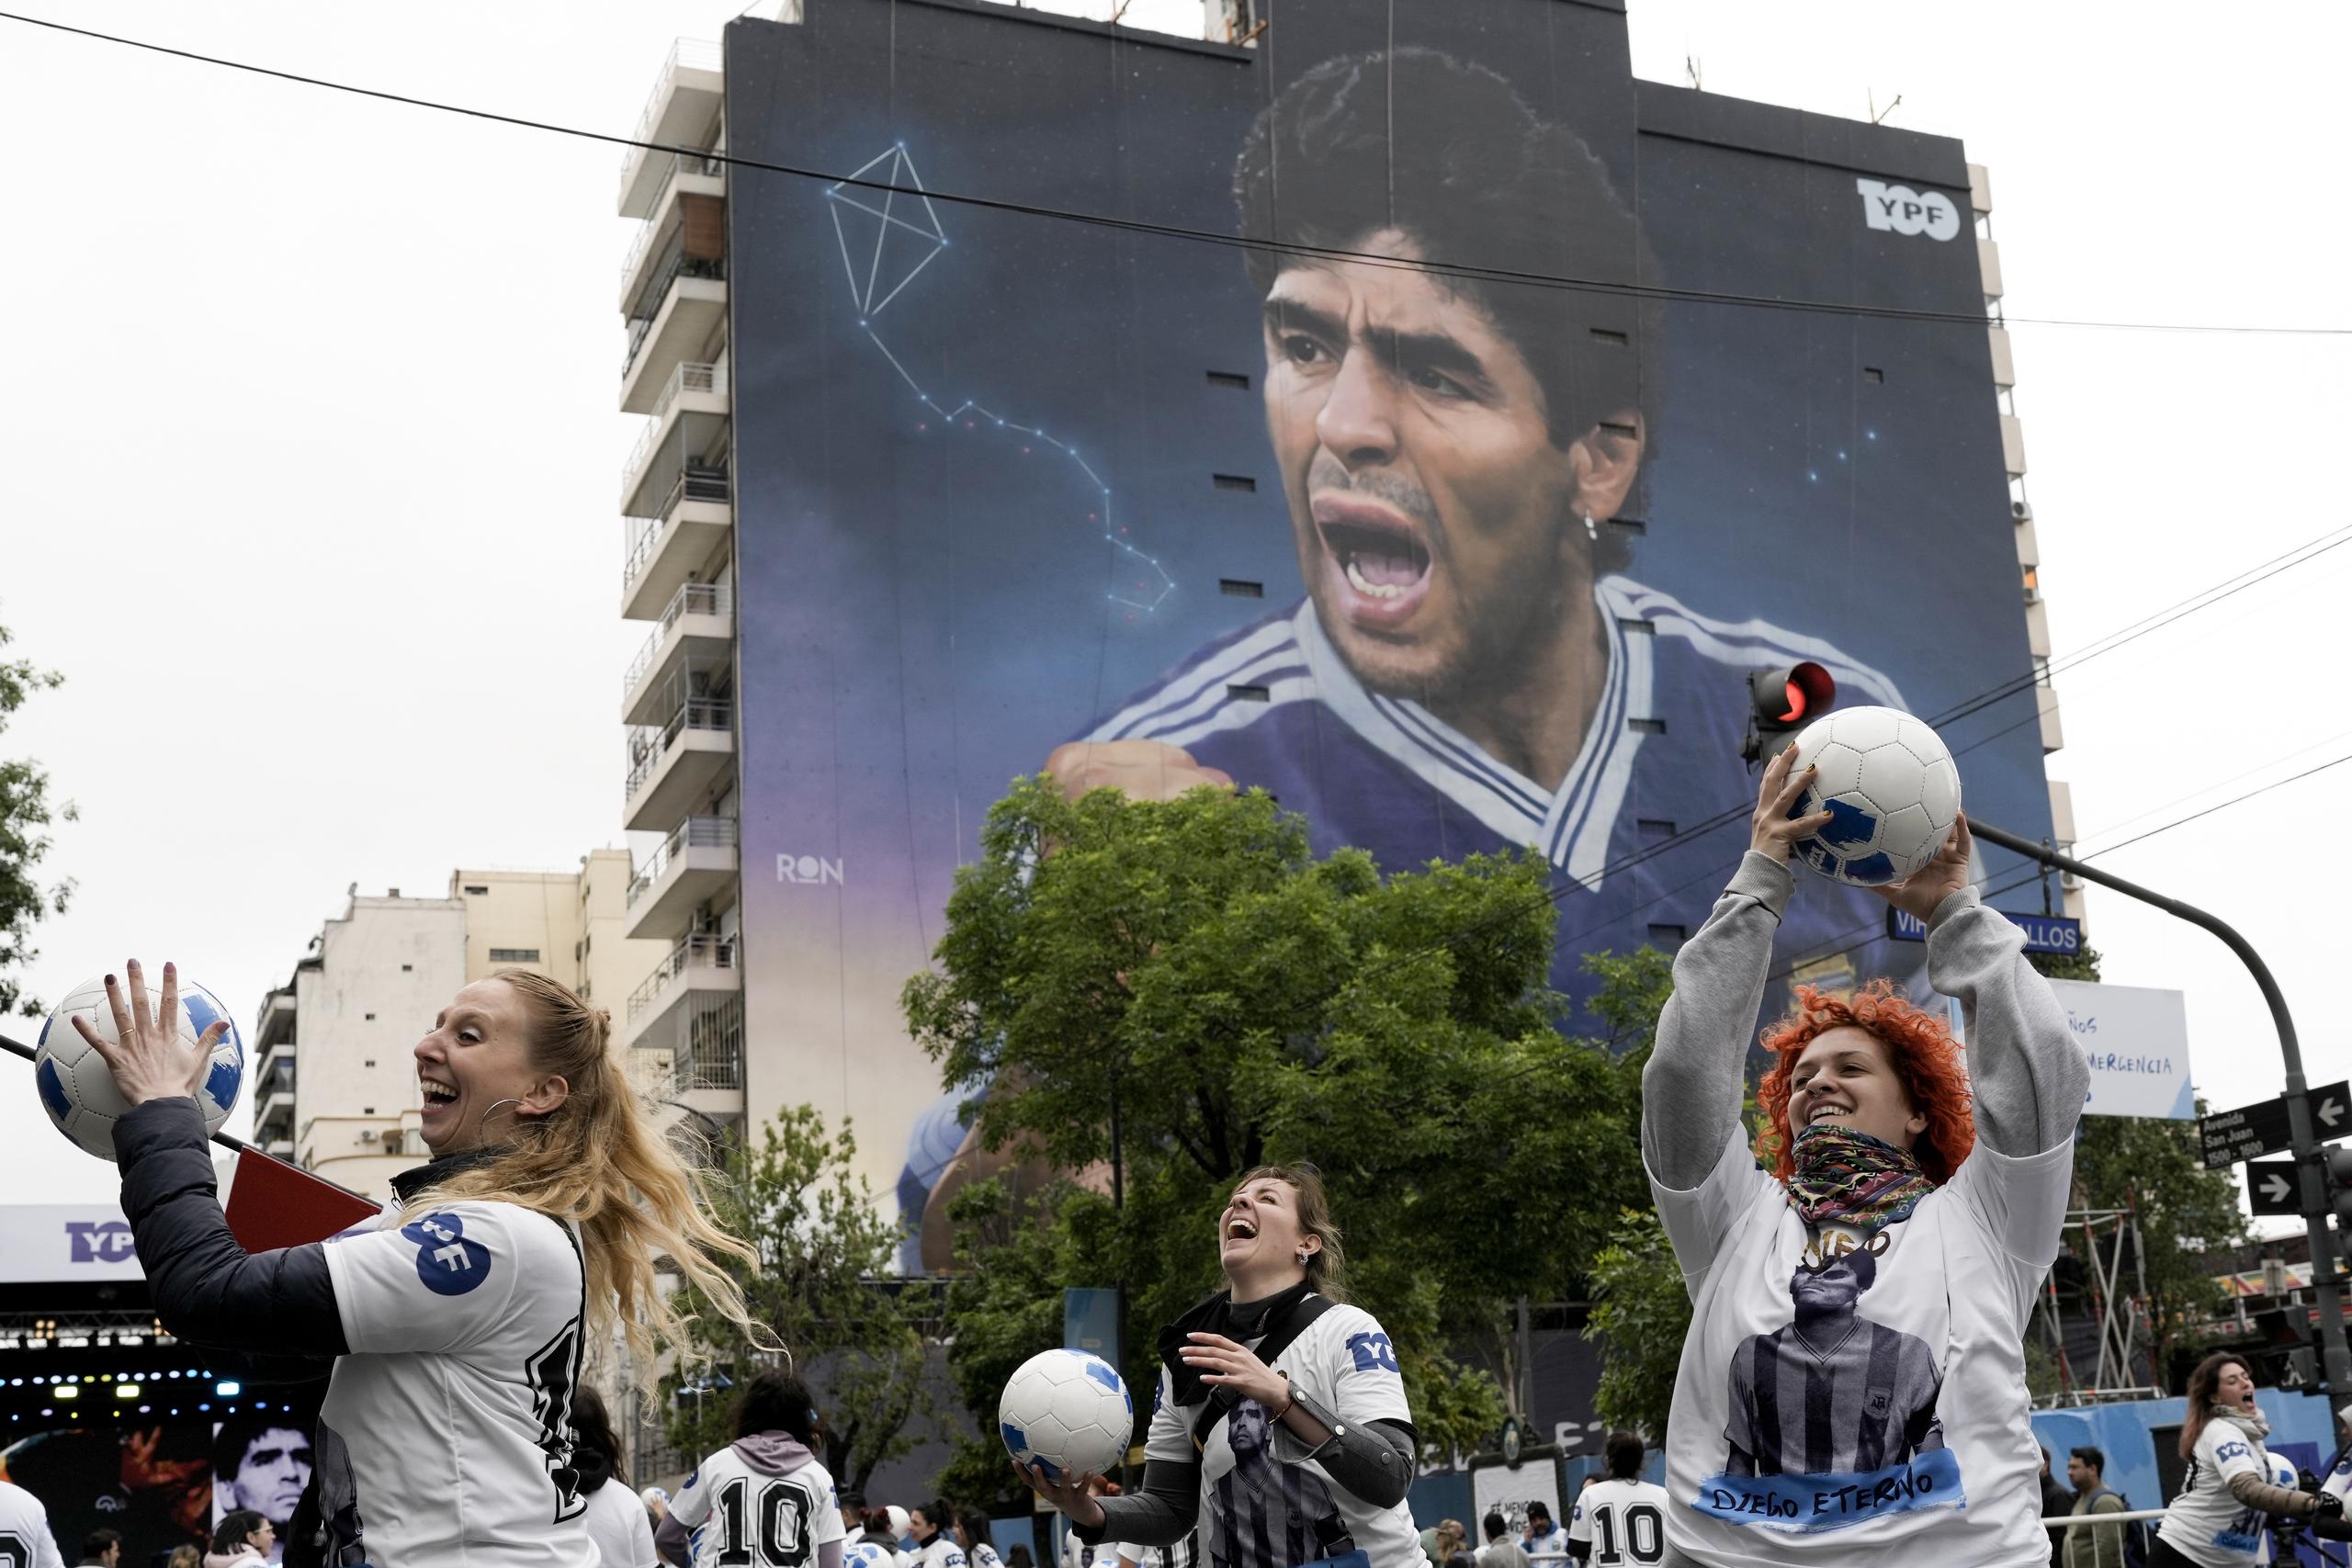 Un grupo de mujeres juegan con balones durante la inauguración del mural de Diego Maradona del artista Martín Ron en Buenos Aires, Argentina, el domingo 30 de octubre de 2022. (AP Foto/Rodrigo Abd)